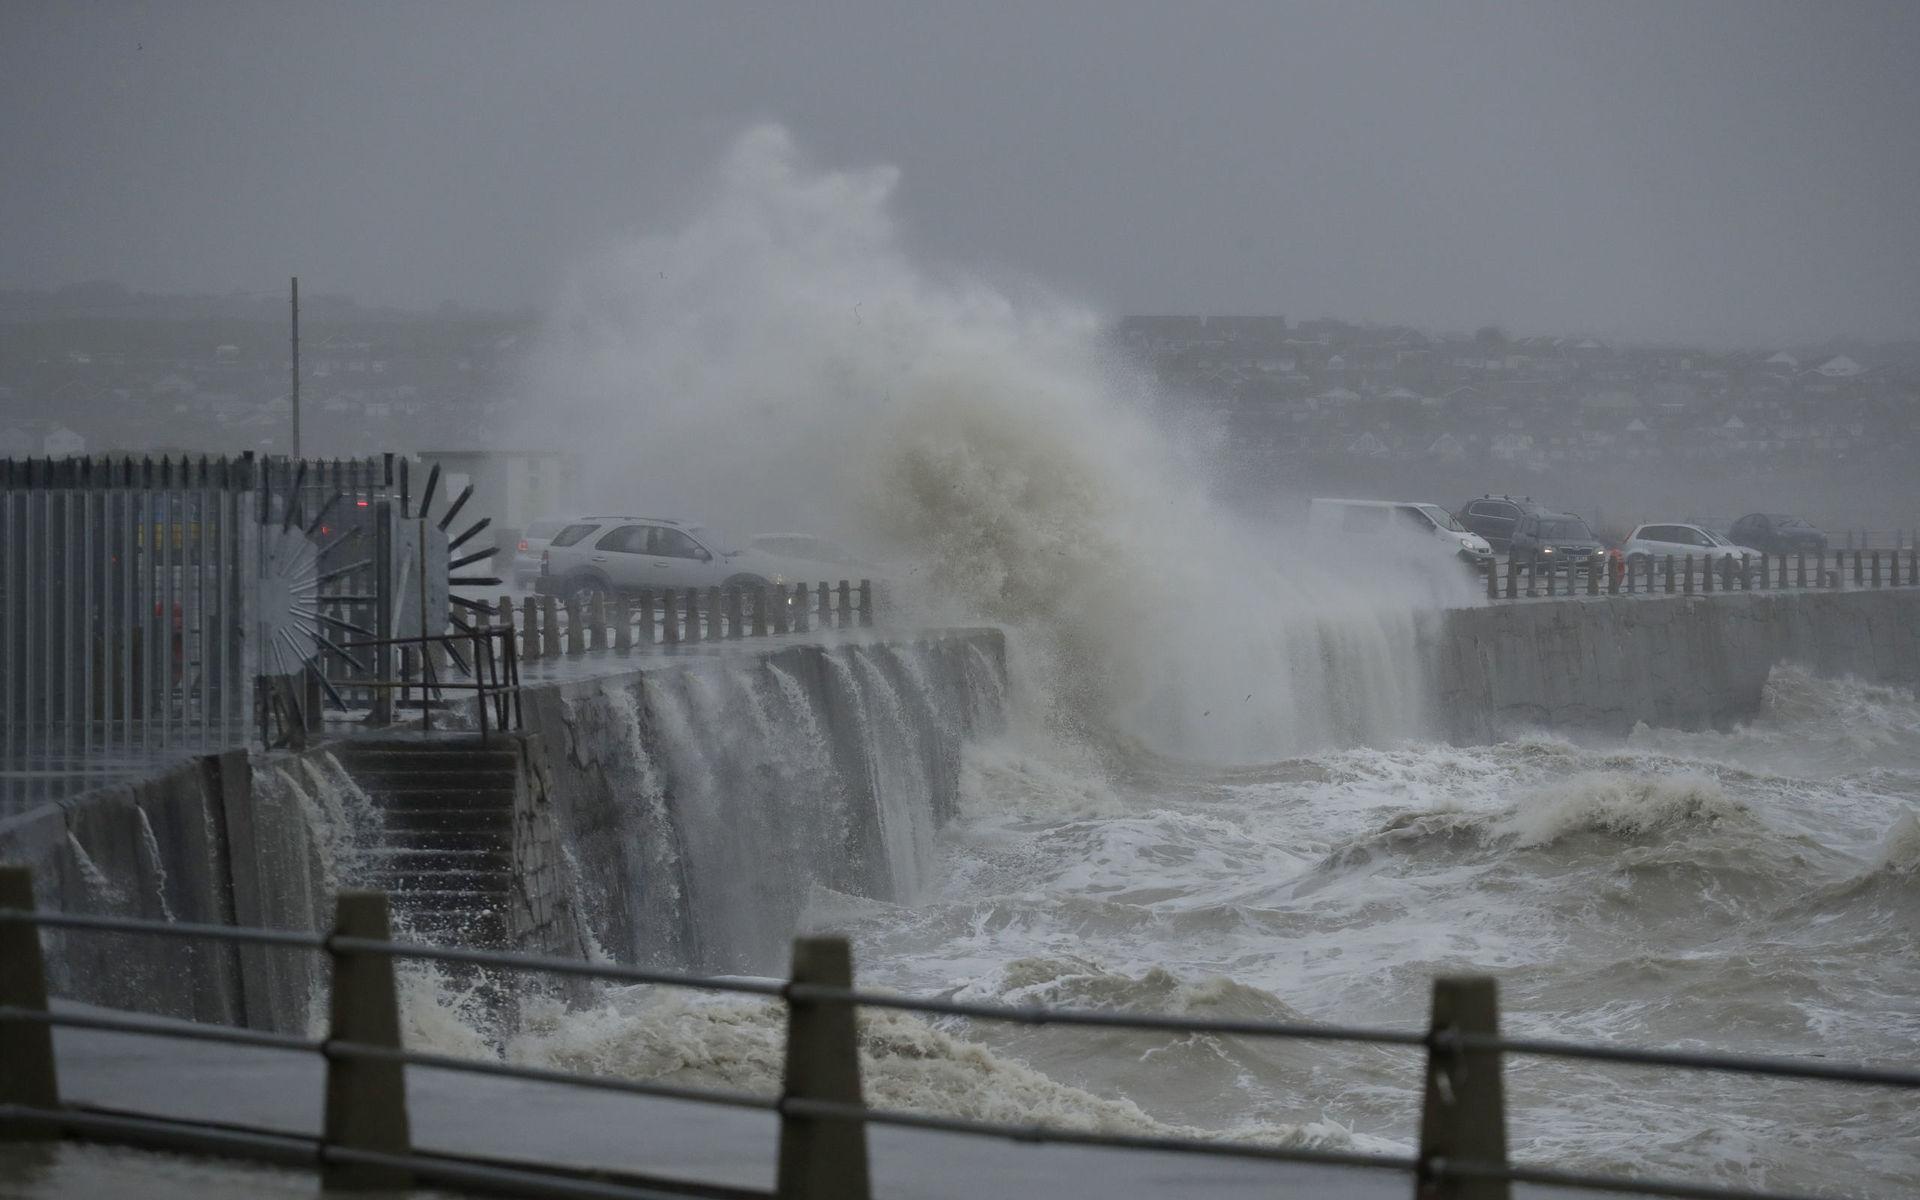 Internationellt påverkades dock andra länder hårdare än Sverige under stormen Ciara. Här ser vi en kraftig våg i Newhaven längs Englands södra kust.